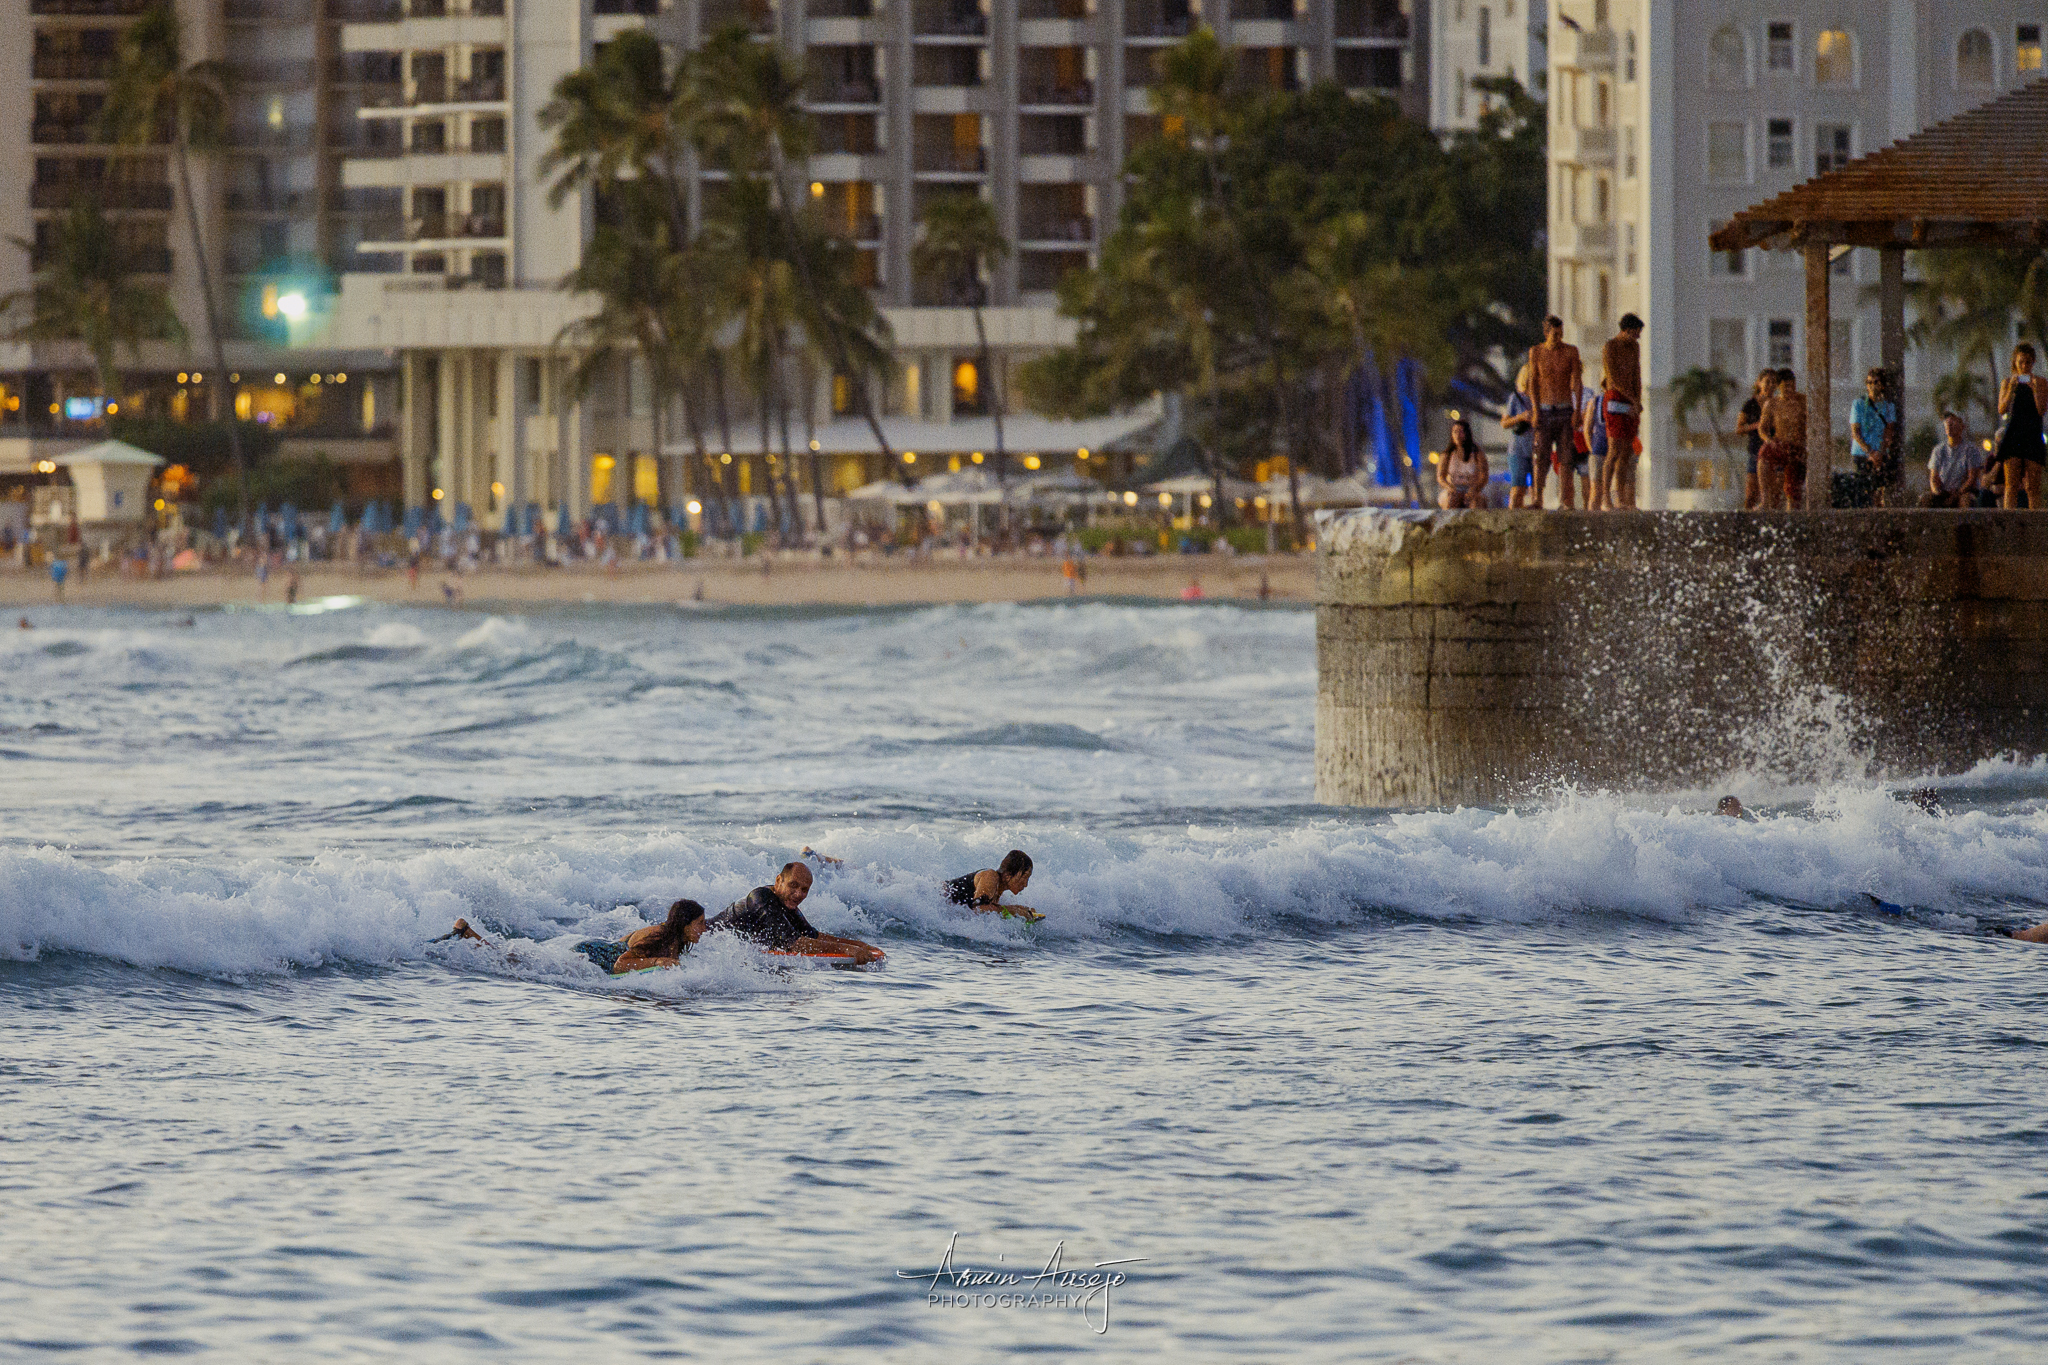 Surfers at Waikiki, Nikon Z7 with Nikon 300mm f/4G PF VR, ISO 5000